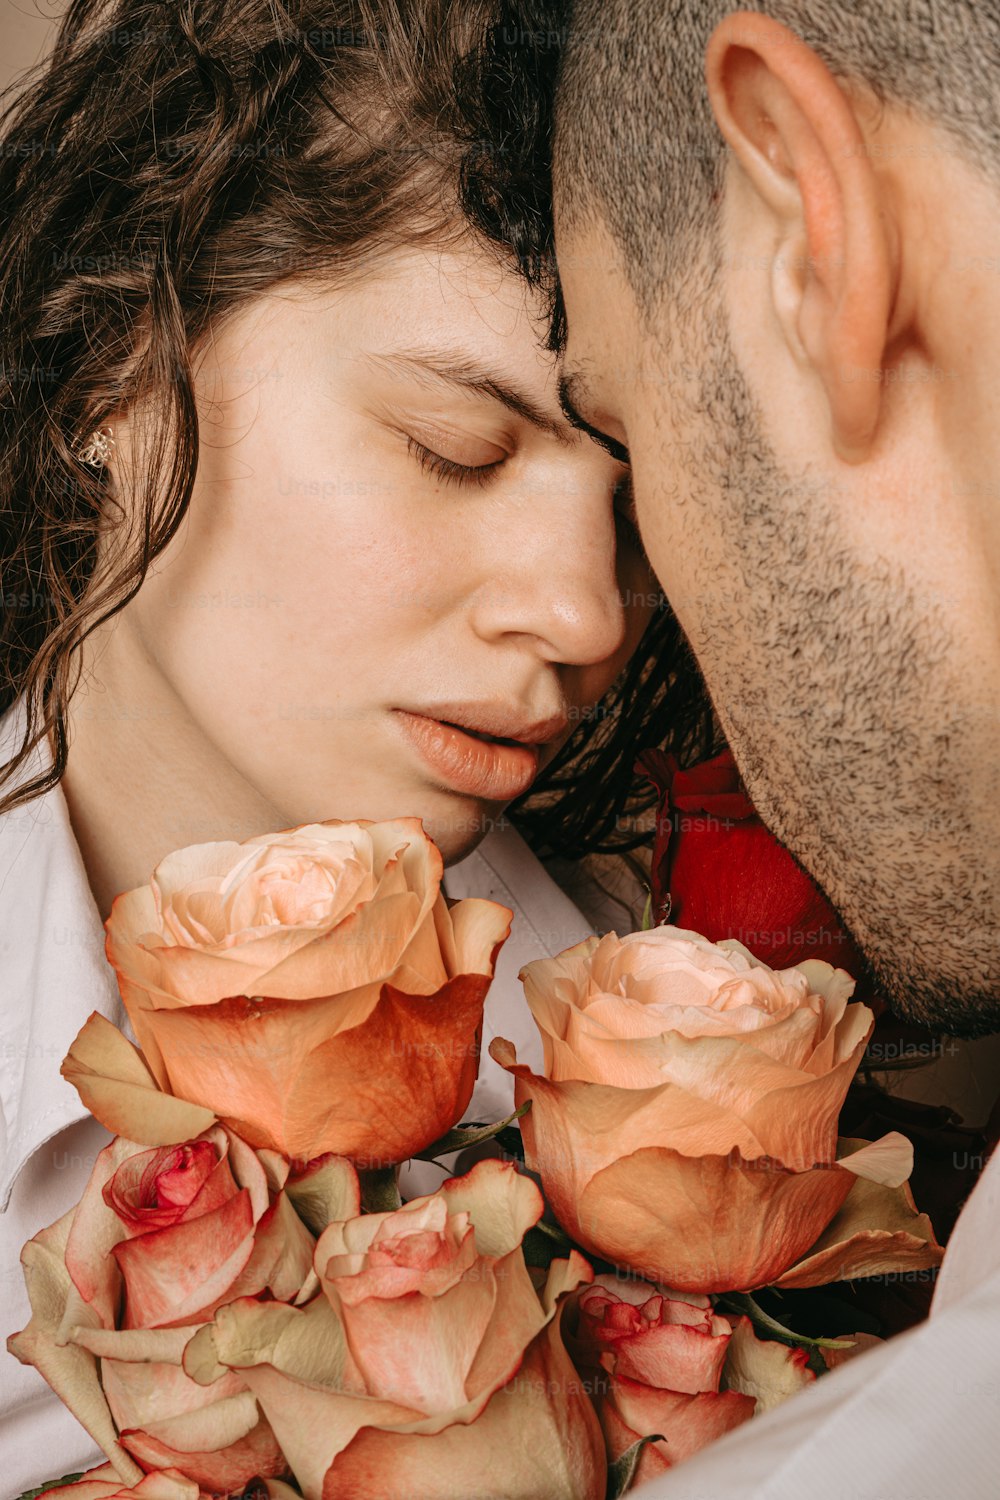 un homme embrassant une femme avec des roses sur ses genoux